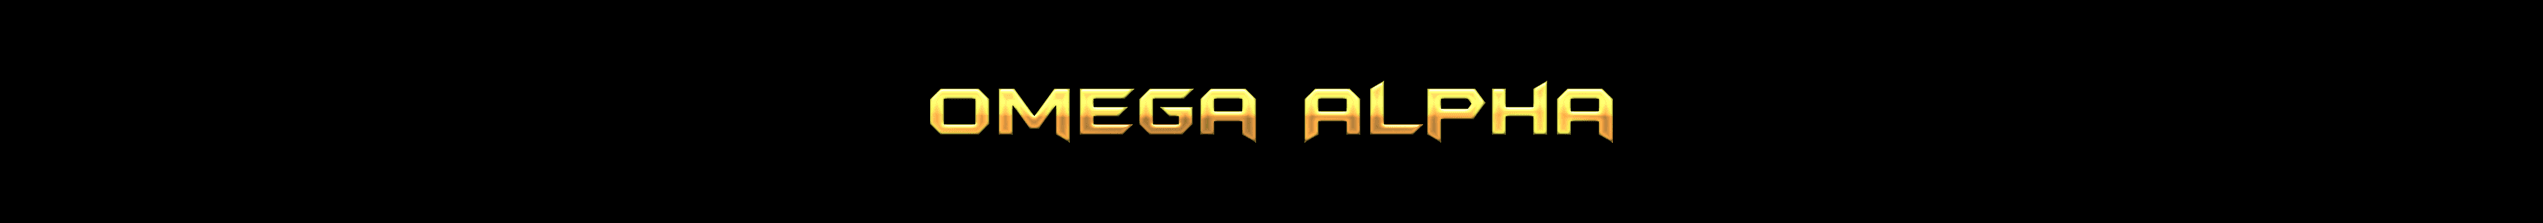 Omega-Alpha-Project-Wallet banner